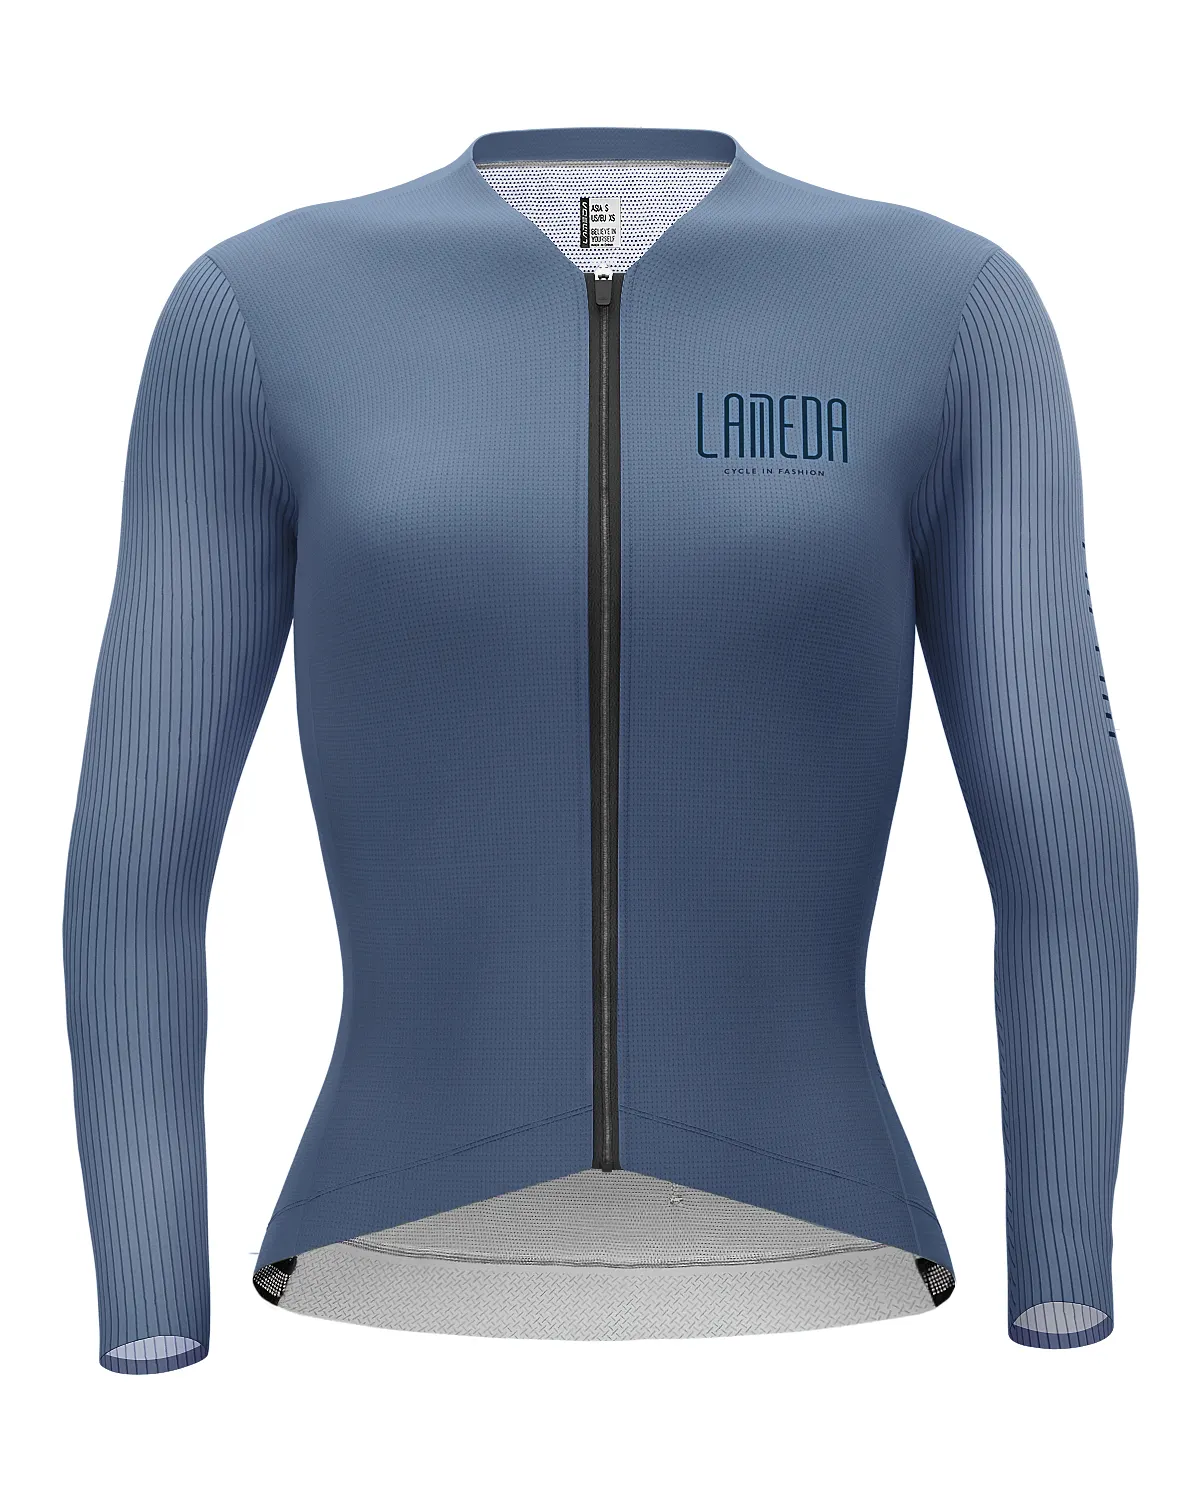 LAMBDA Coolmax Kaus Bersepeda, Atasan Sublimasi Desain Gratis Sublimasi